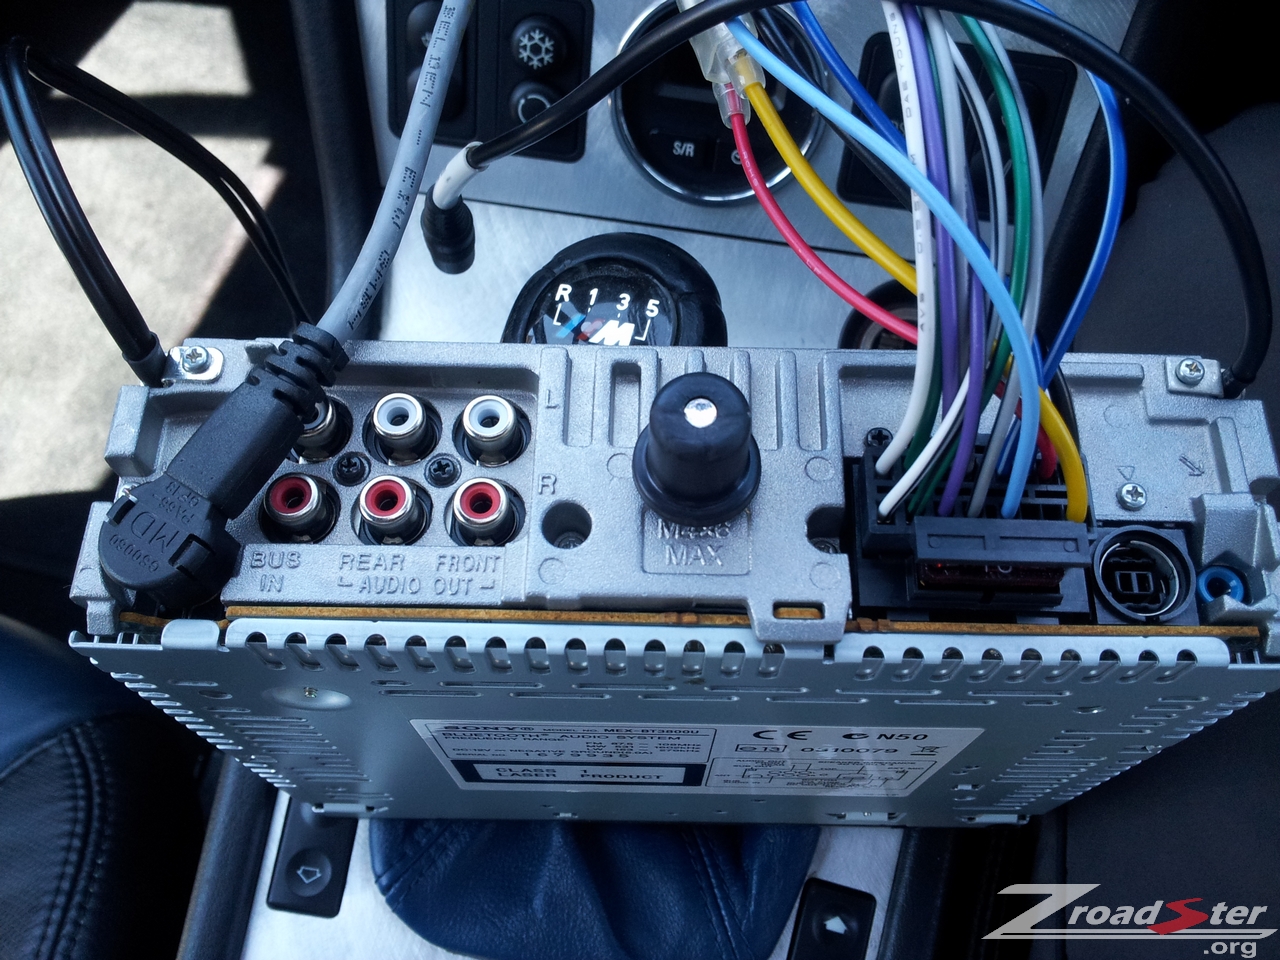 BMW Z3 Radio Head Unit Removal and Replacement | BMW Z1 Z4 Z8 Z3 Forum